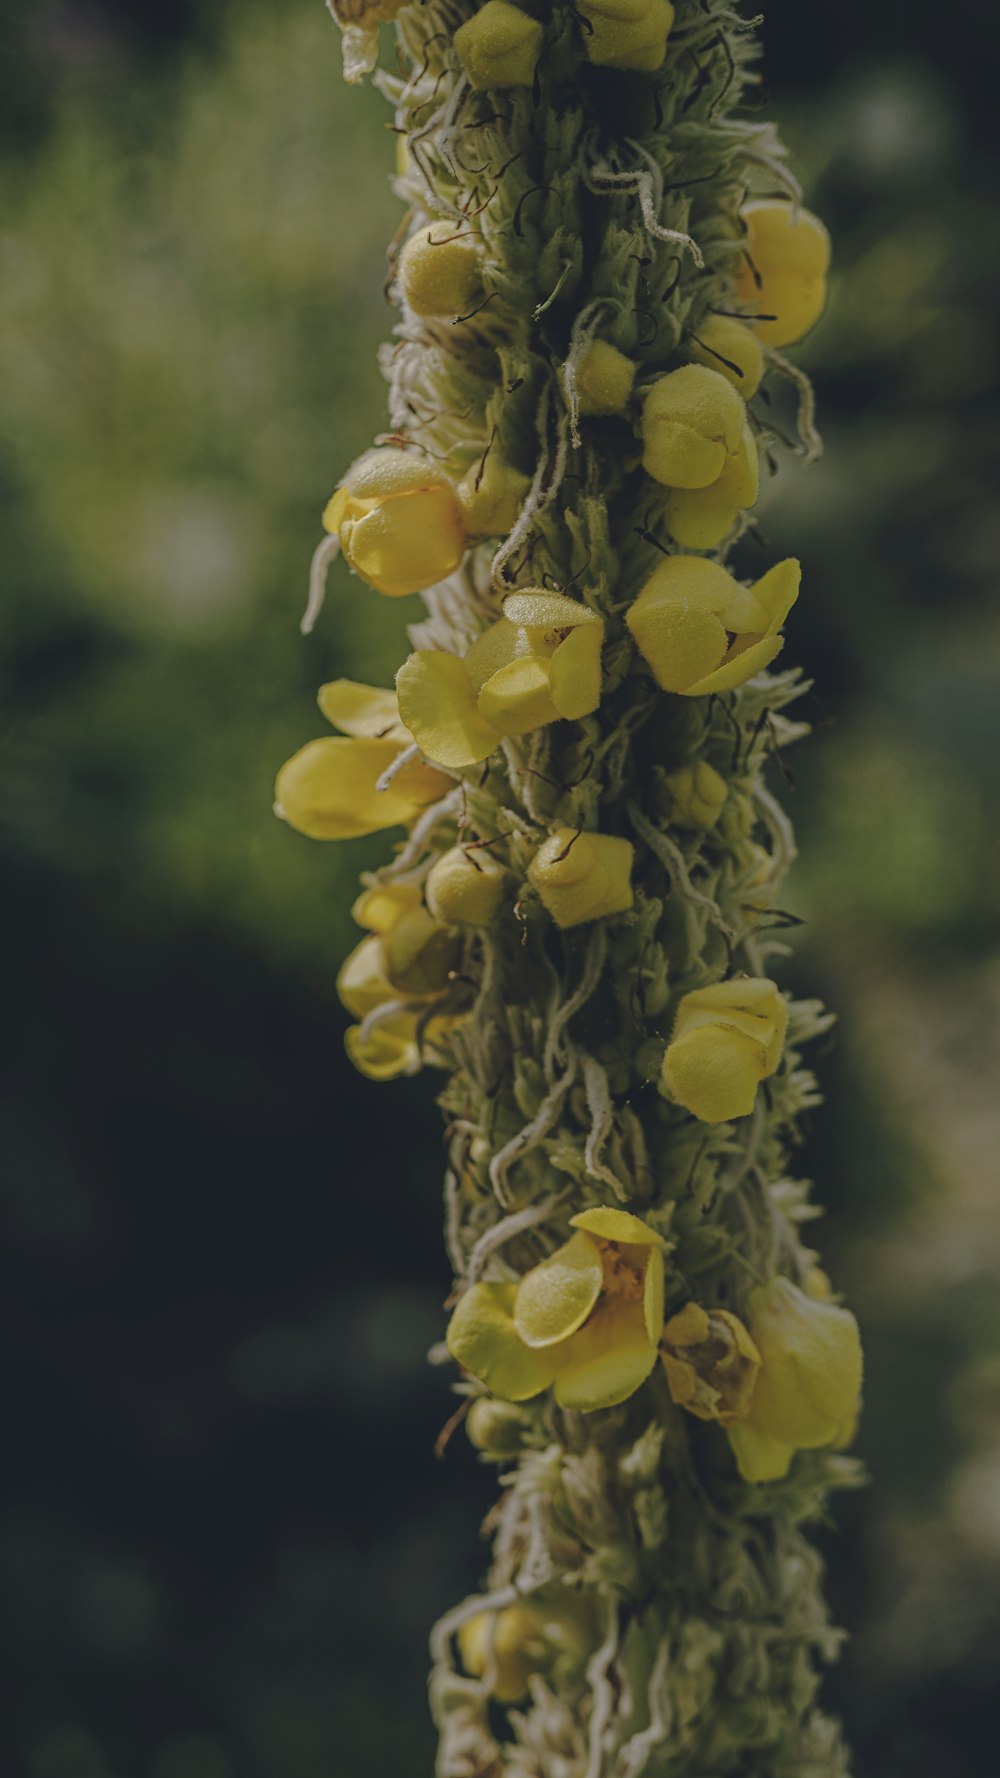 Un primo piano di una pianta con fiori gialli